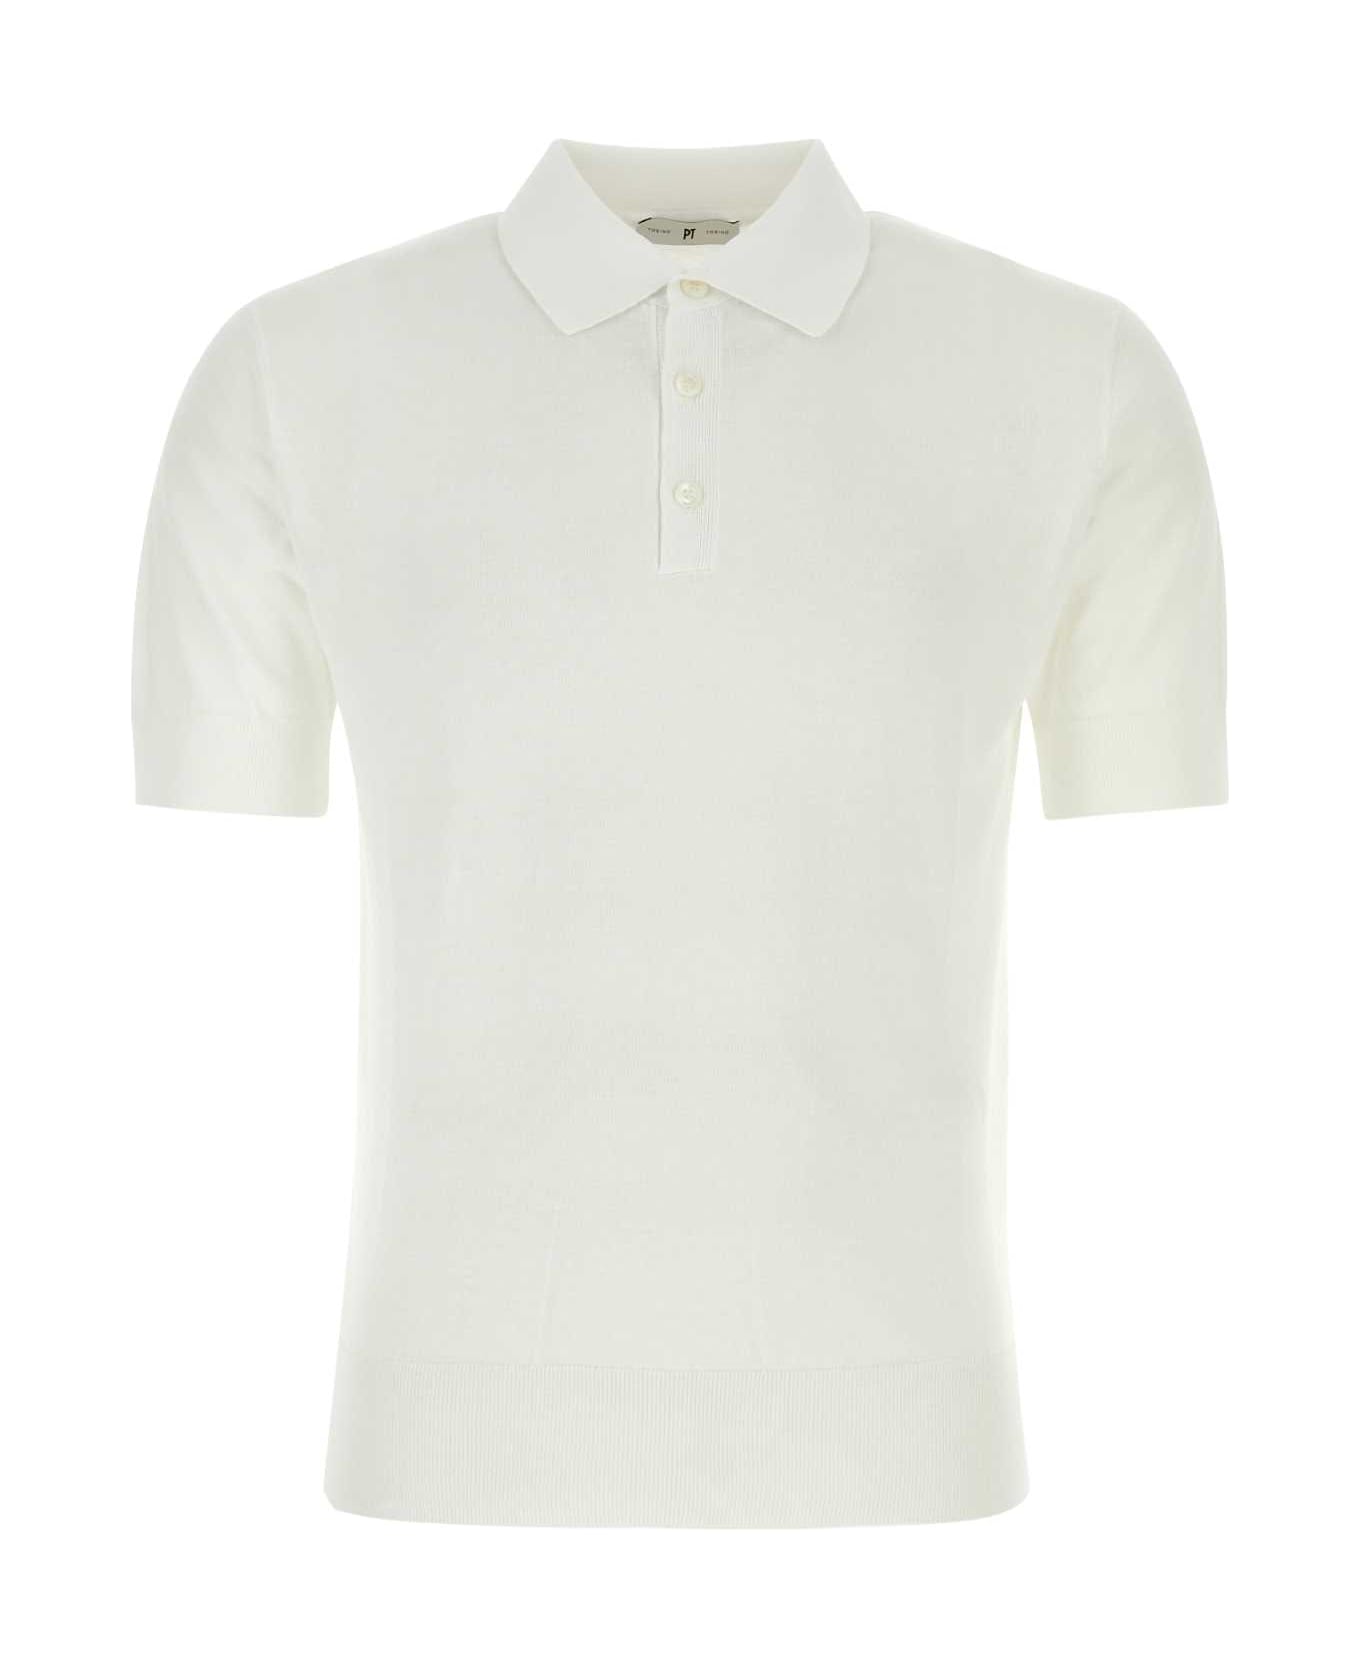 PT Torino White Cotton Polo Shirt - BIANCO